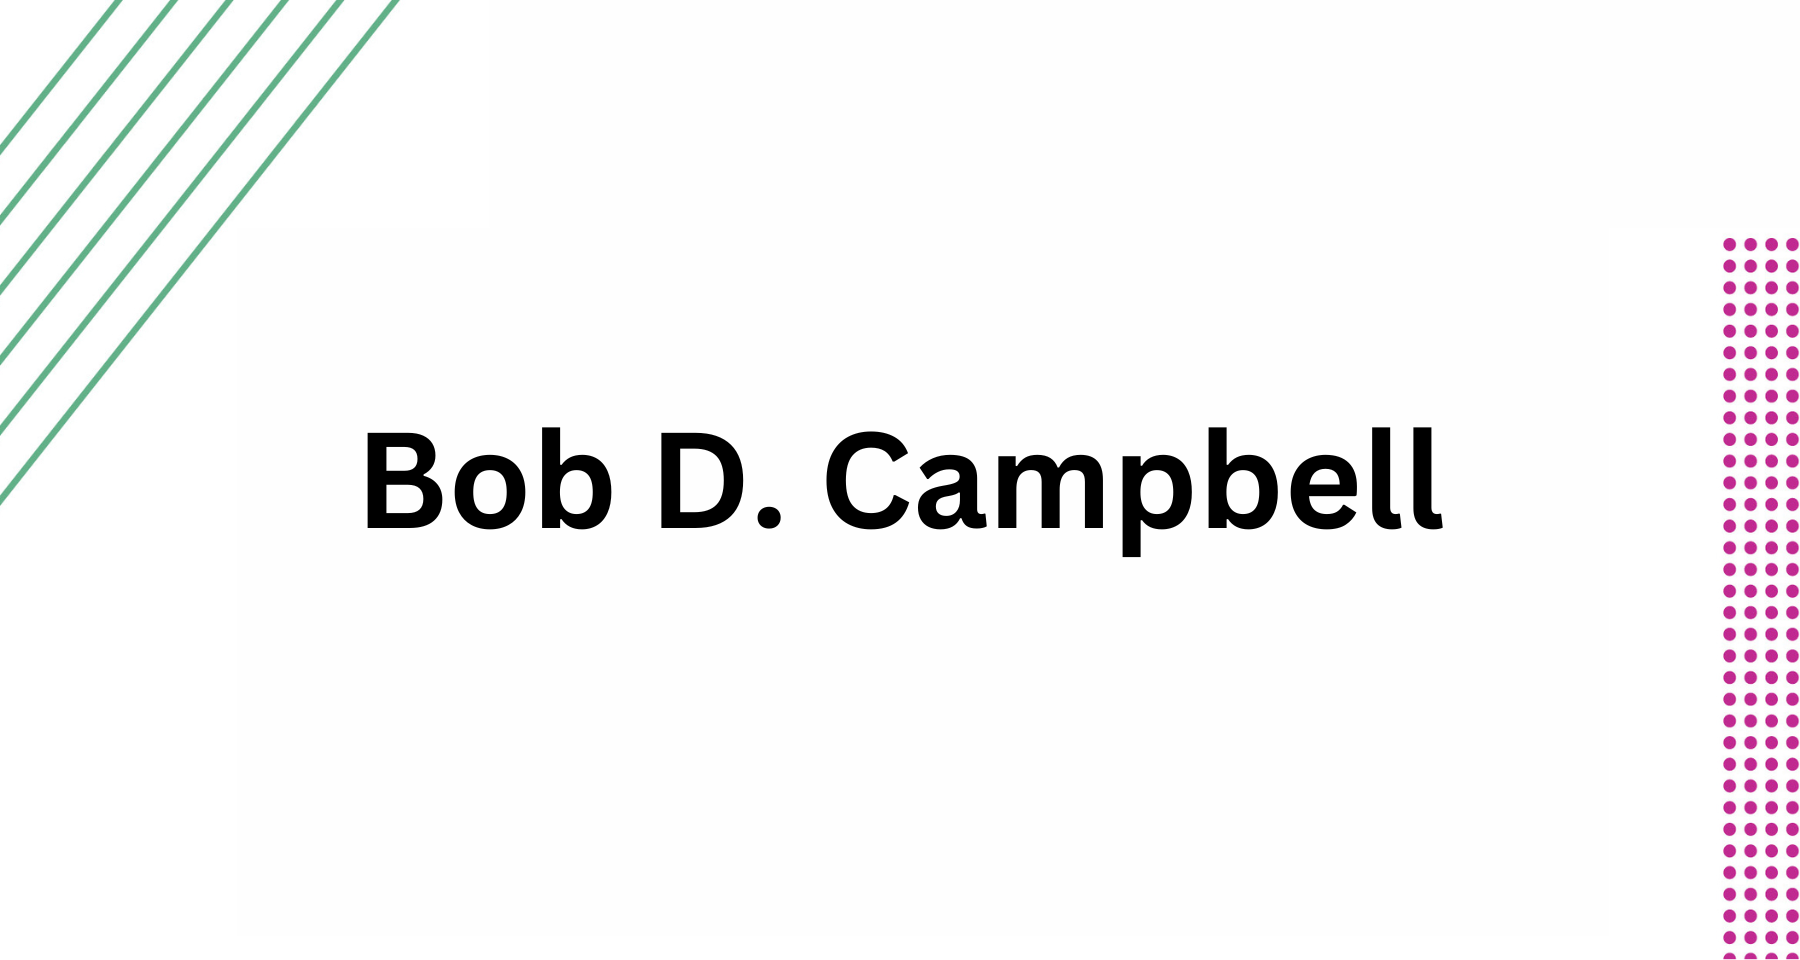 Bob D. Campbell